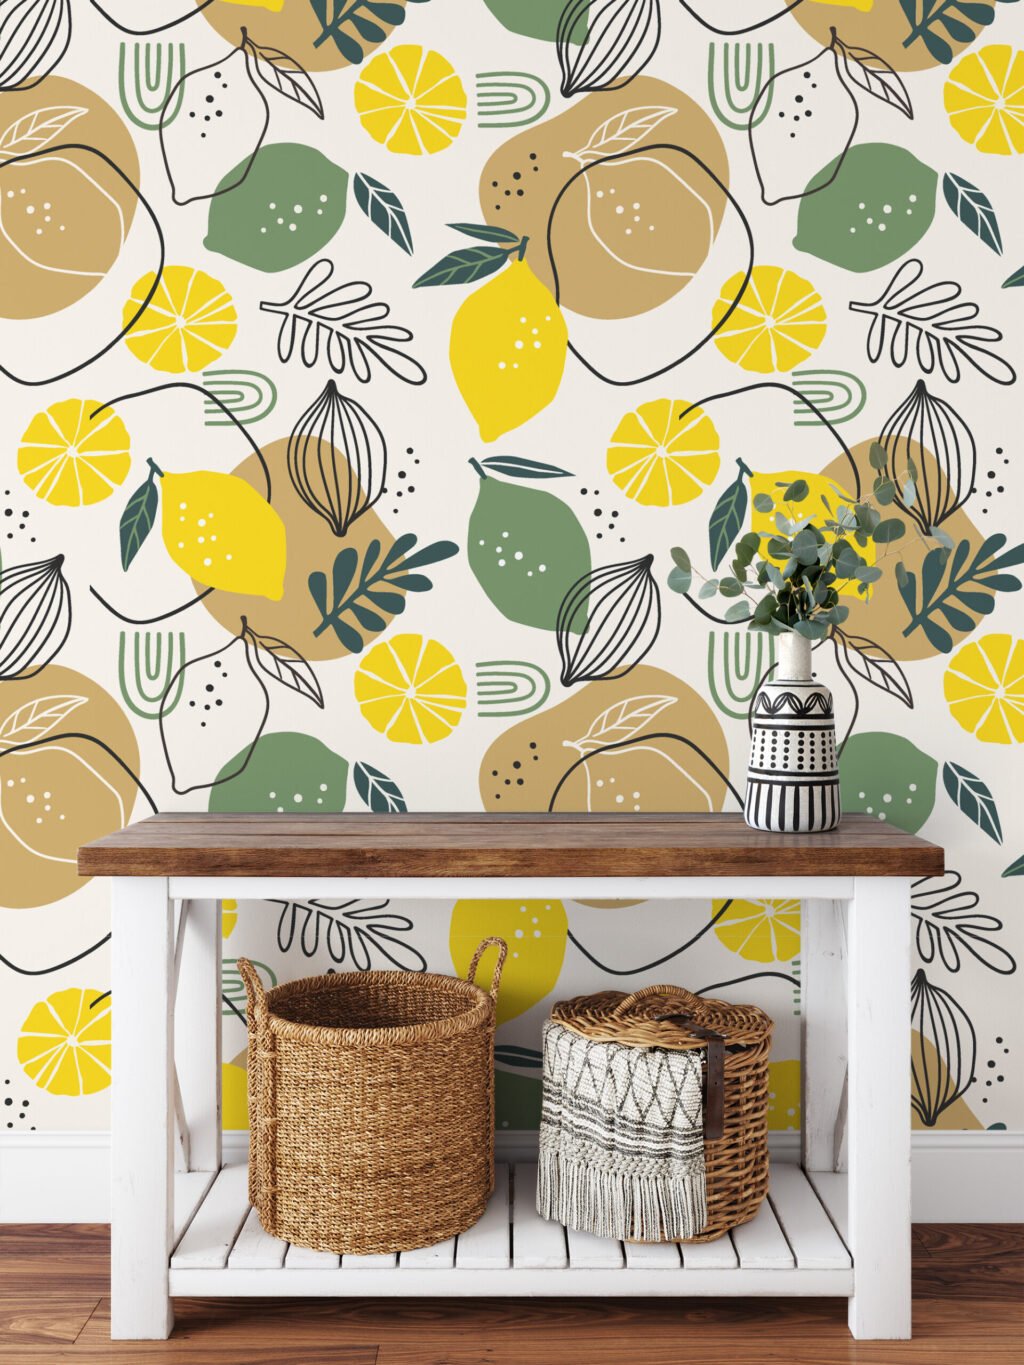 Limon ve Yapraklarla Line Art Duvar Kağıdı, Turunçgil Tasarımı Duvar Posteri Çiçekli Duvar Kağıtları 3